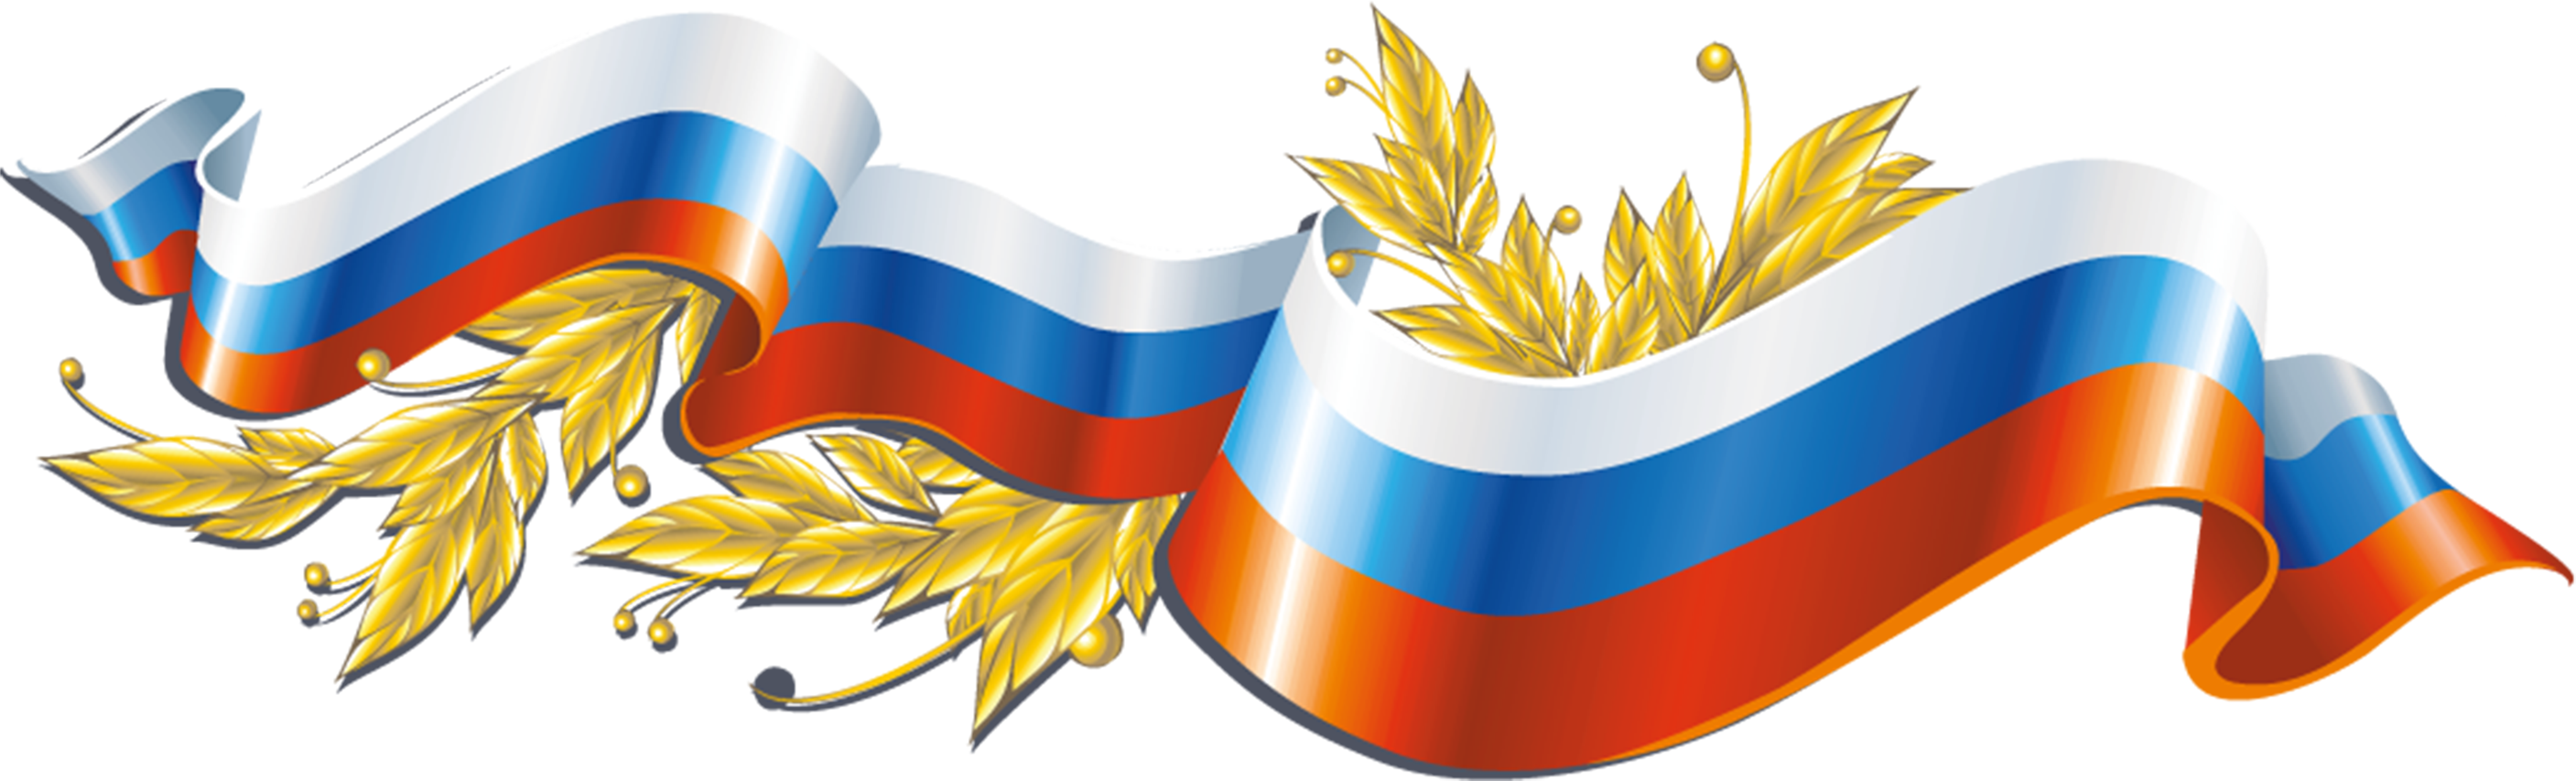 Флаг россии пнг на прозрачном фоне